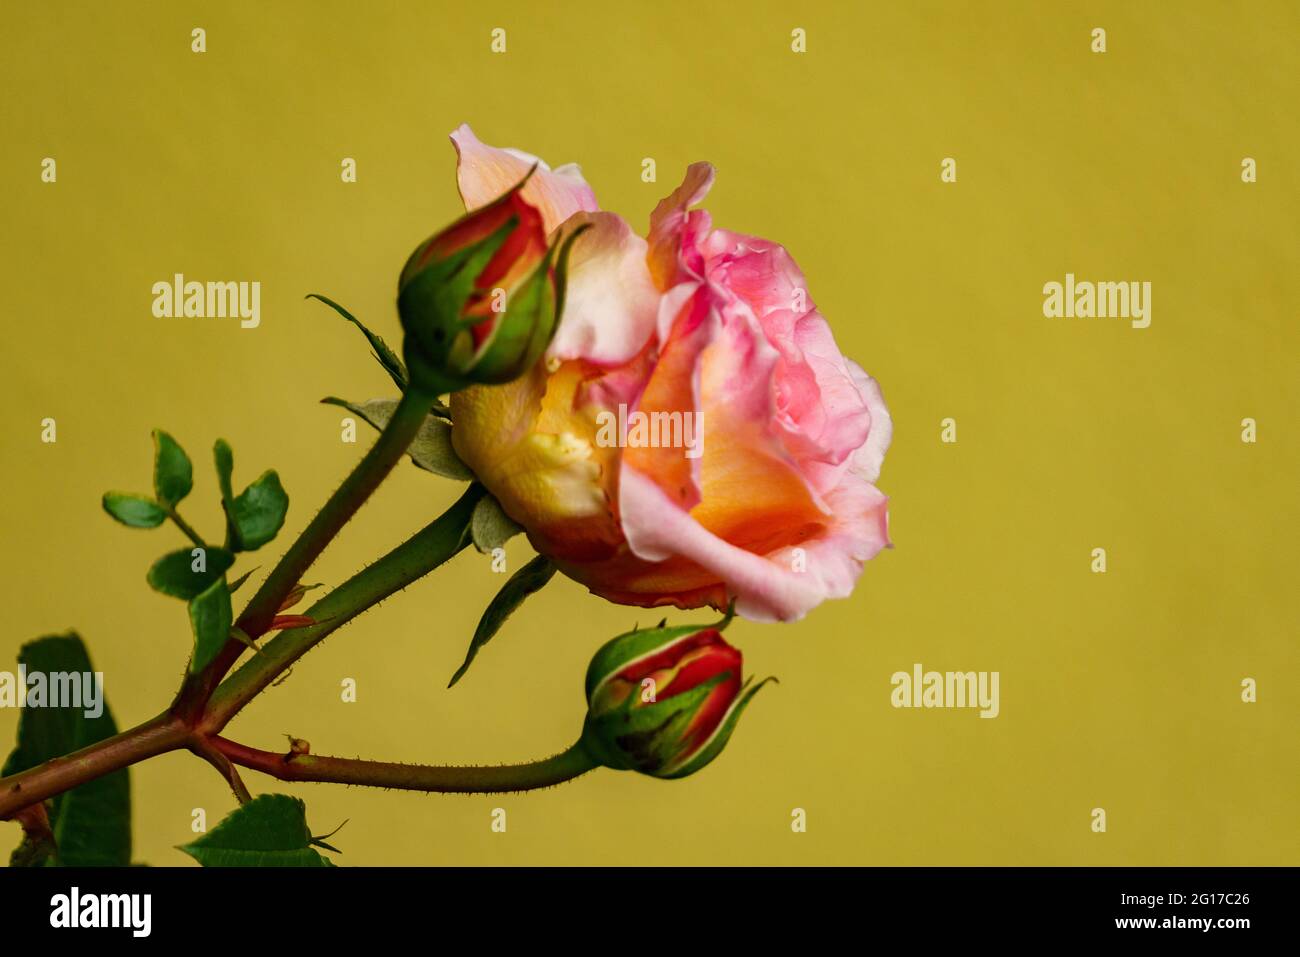 Rote Rose am Rosenstock vor einer Hauswand, orange, rosa, gelb mehrfarbig  im grünen Blättermeer. Morgentau auf Rosenknospe. Symbol für Liebe und  Treue Photo Stock - Alamy